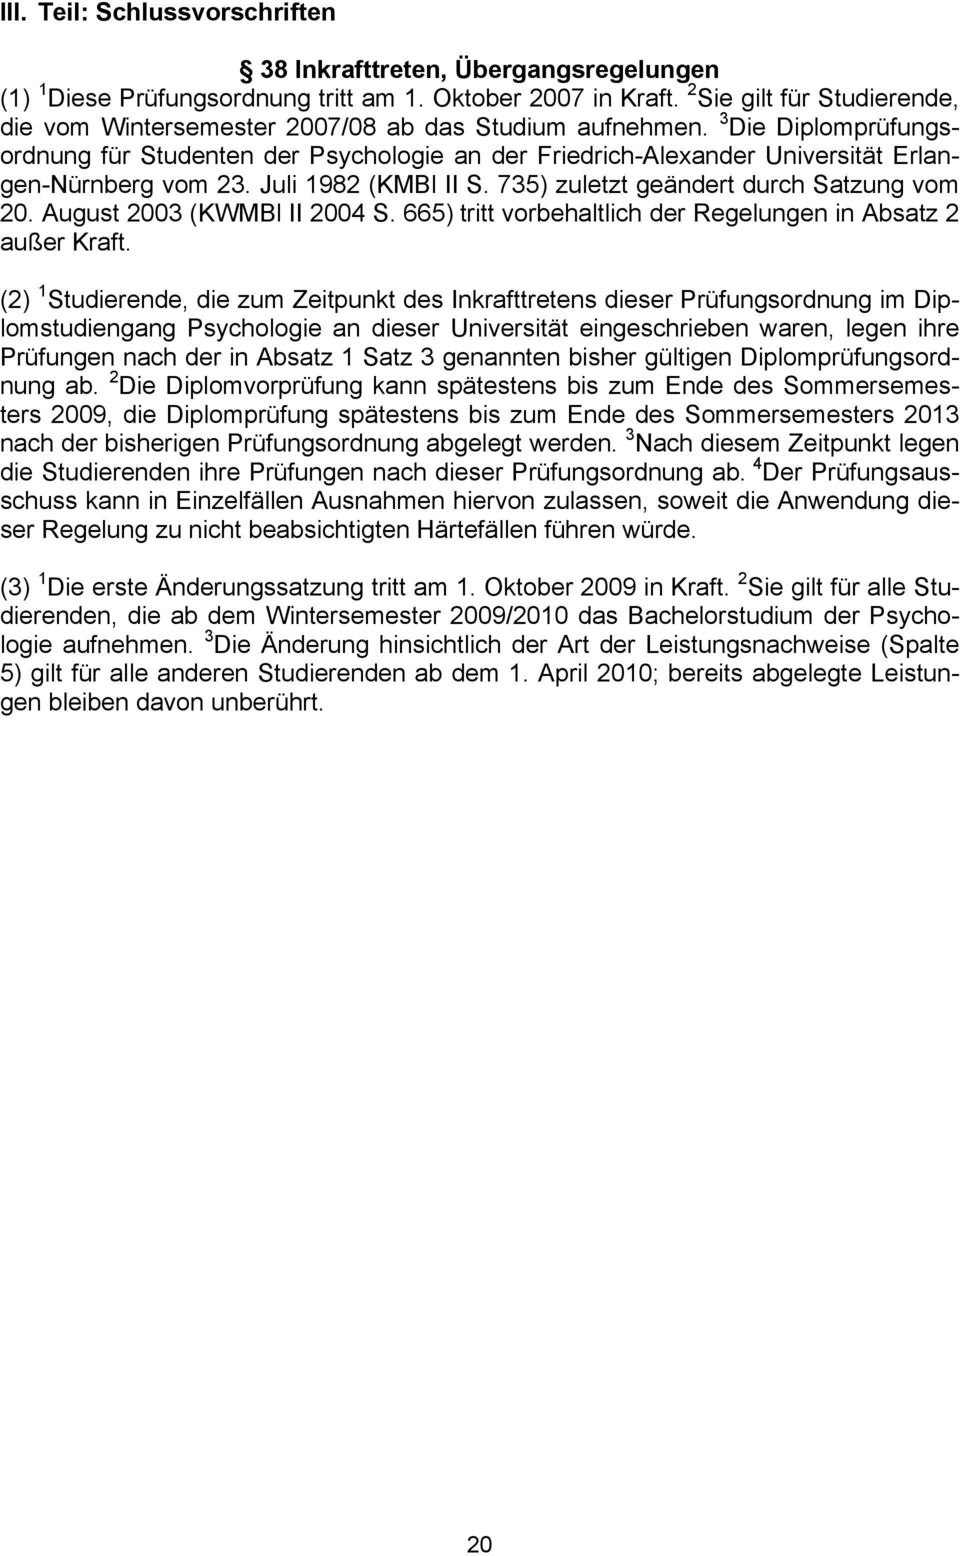 3 Die Diplomprüfungsordnung für Studenten der Psychologie an der Friedrich-Alexander Universität Erlangen-Nürnberg vom 23. Juli 1982 (KMBl II S. 735) zuletzt geändert durch Satzung vom 20.